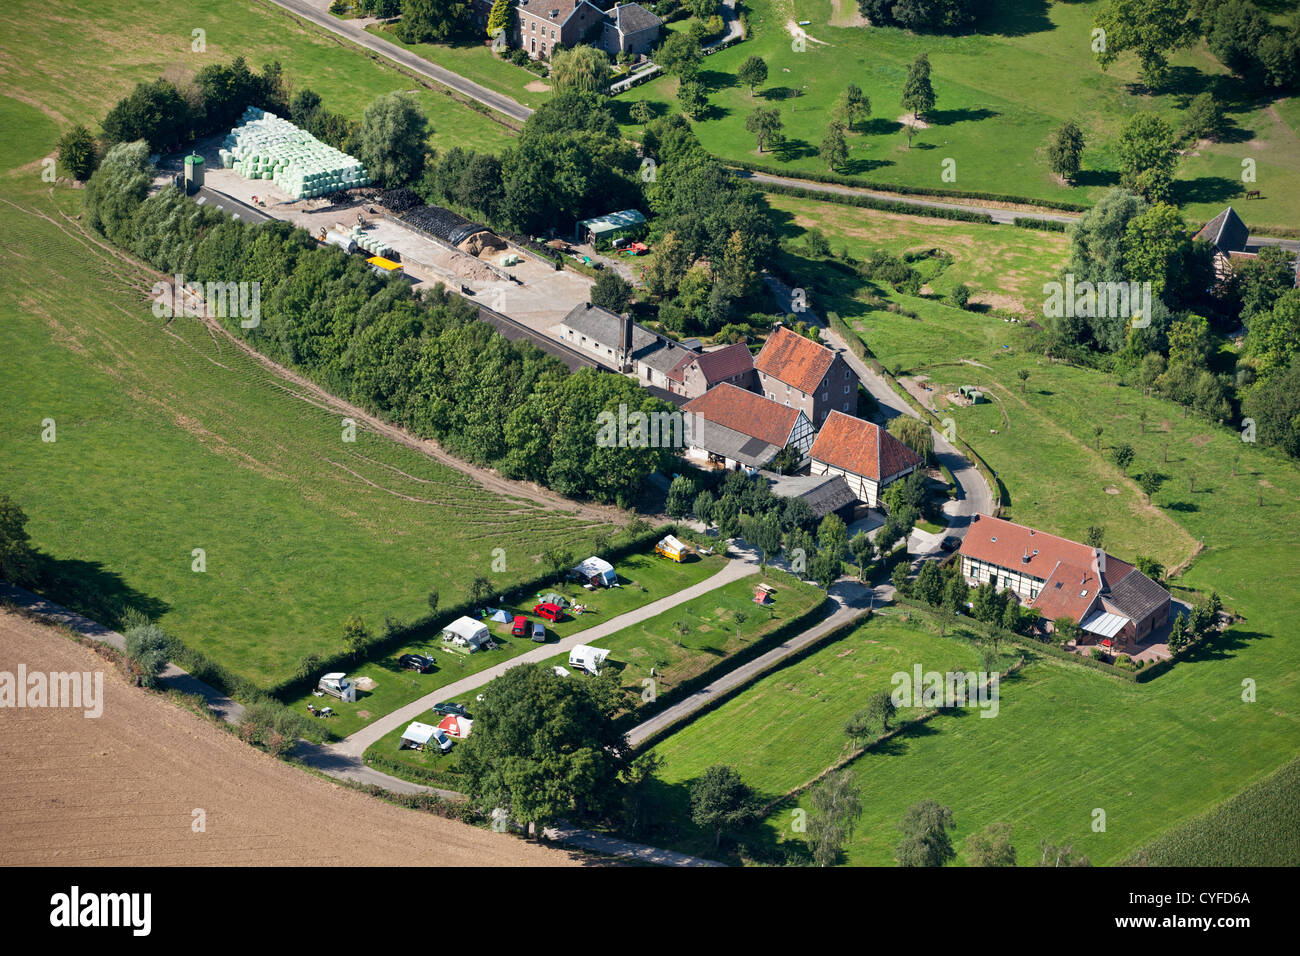 Den Niederlanden, Epen, halb gezimmerten Bauernhäusern, Campingplatz. Luft. Stockfoto